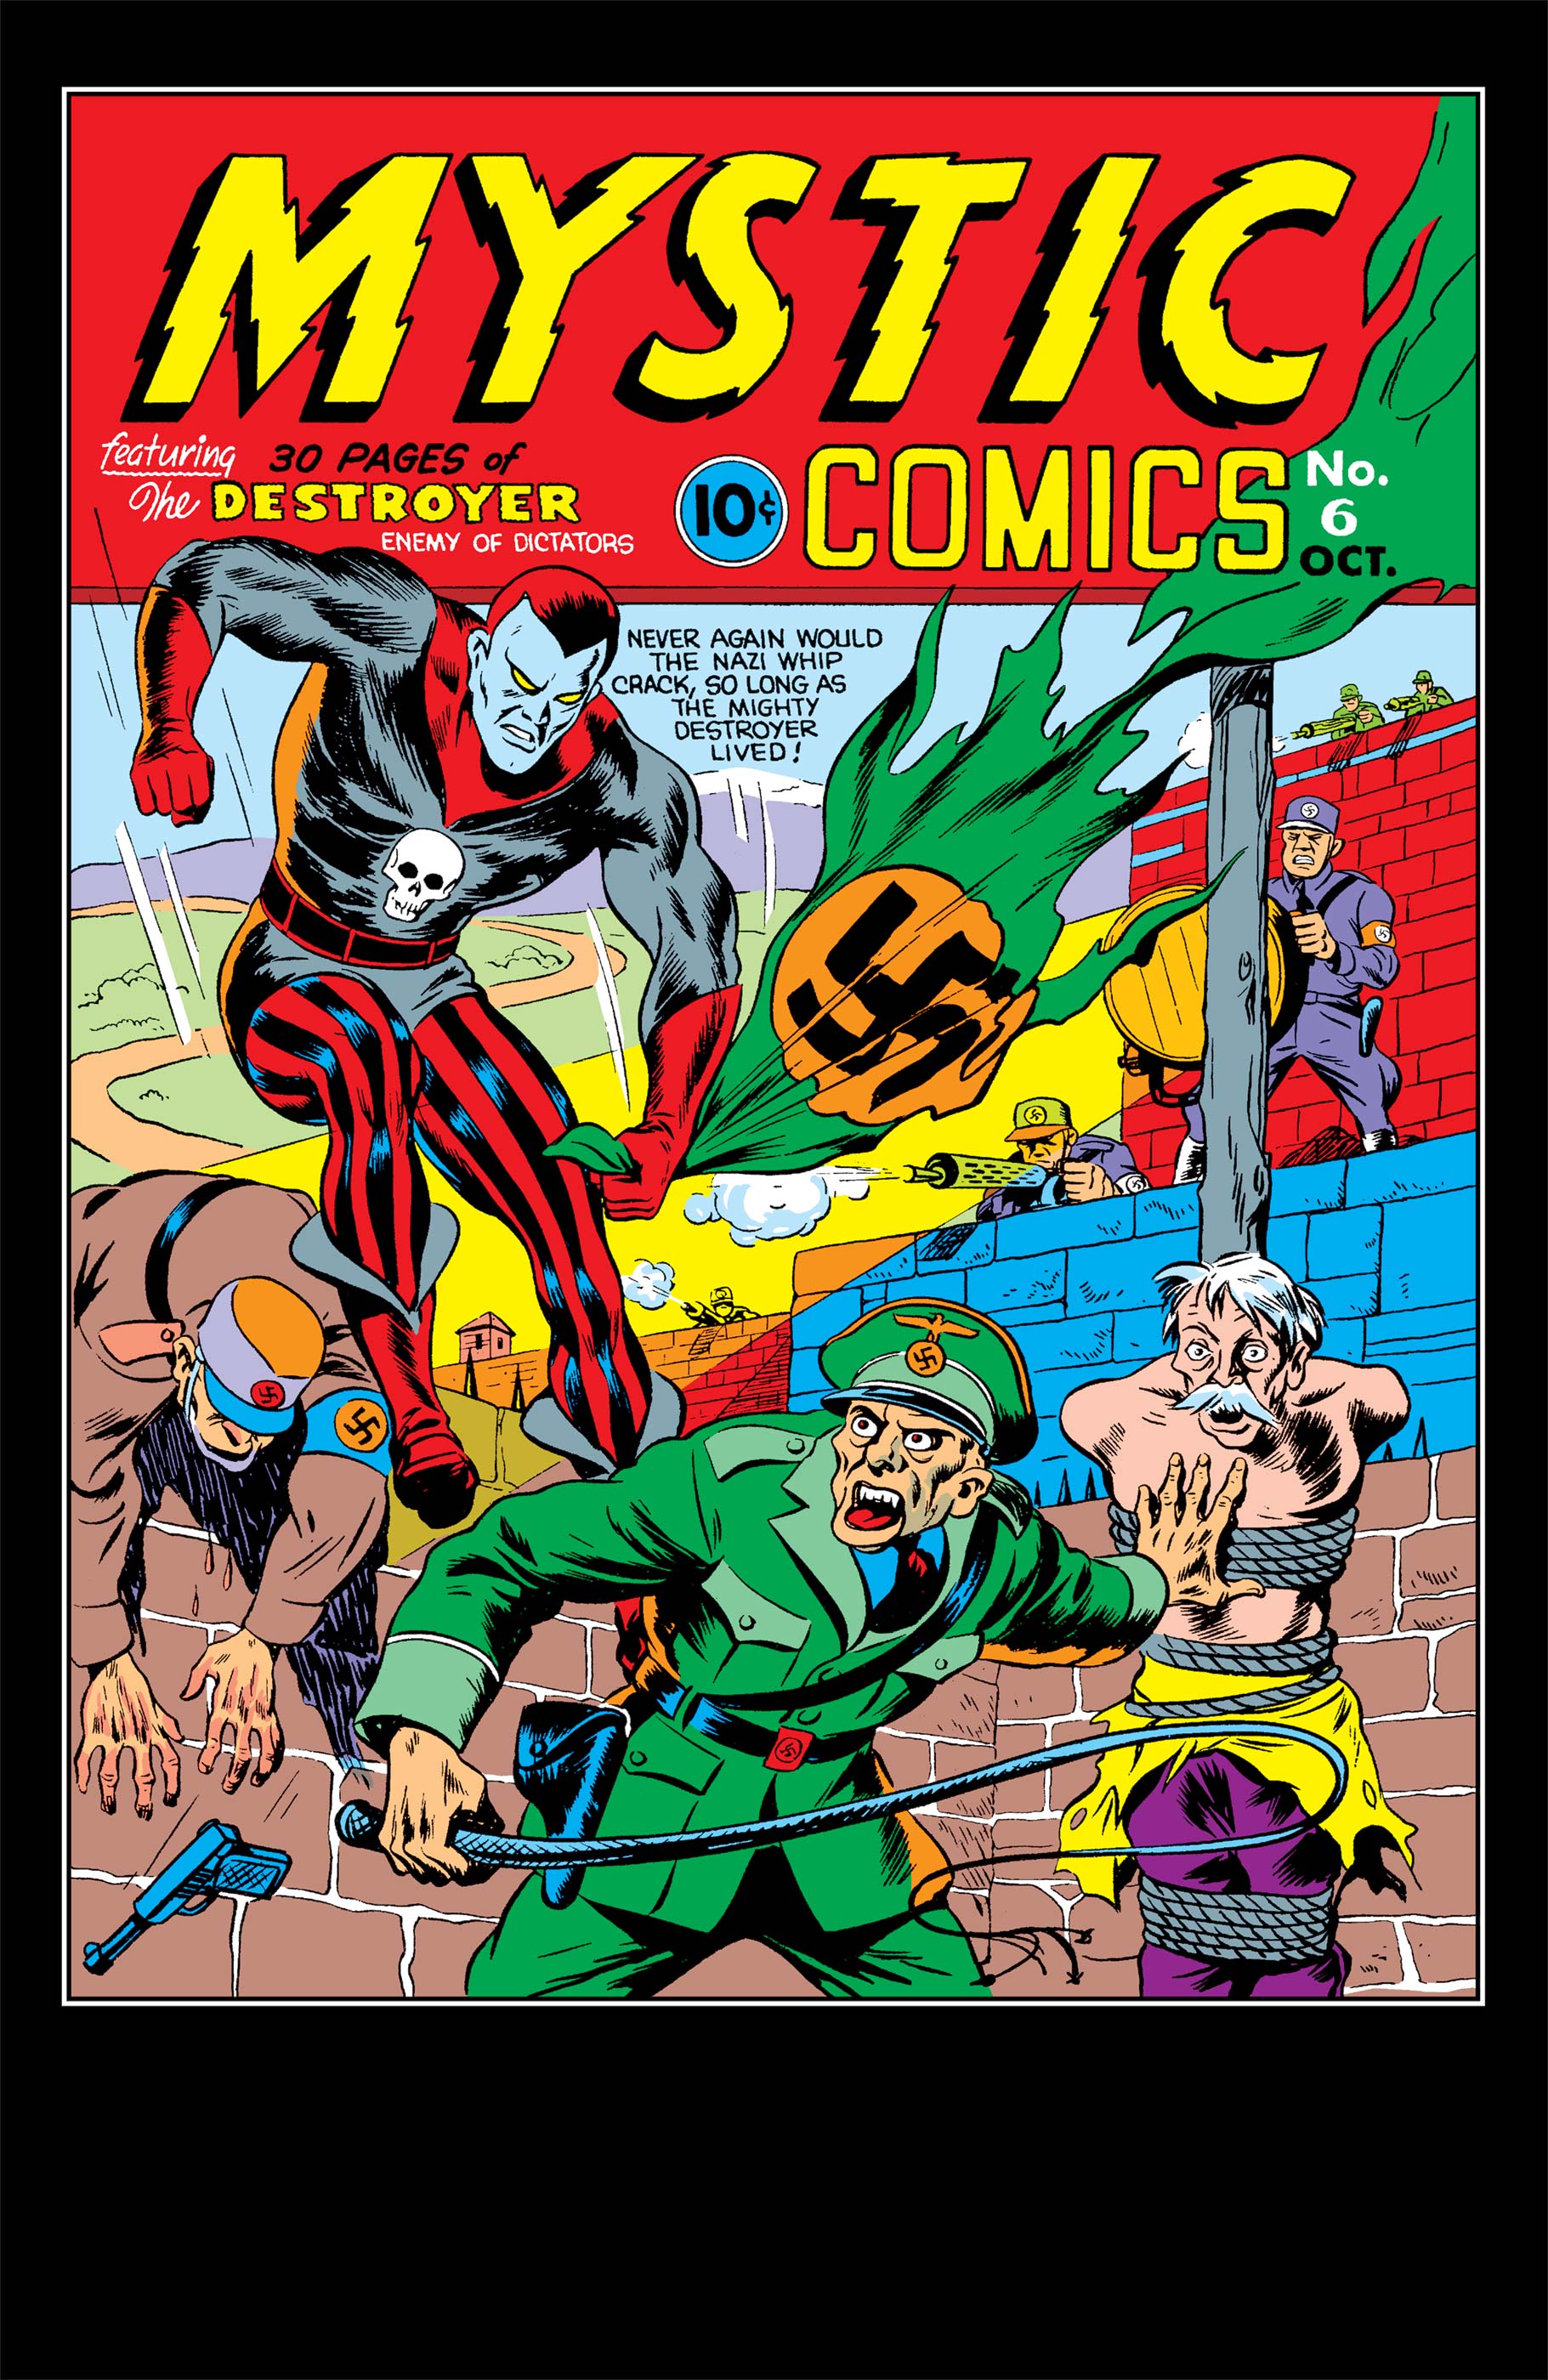 Mystic Comics (1940) #6